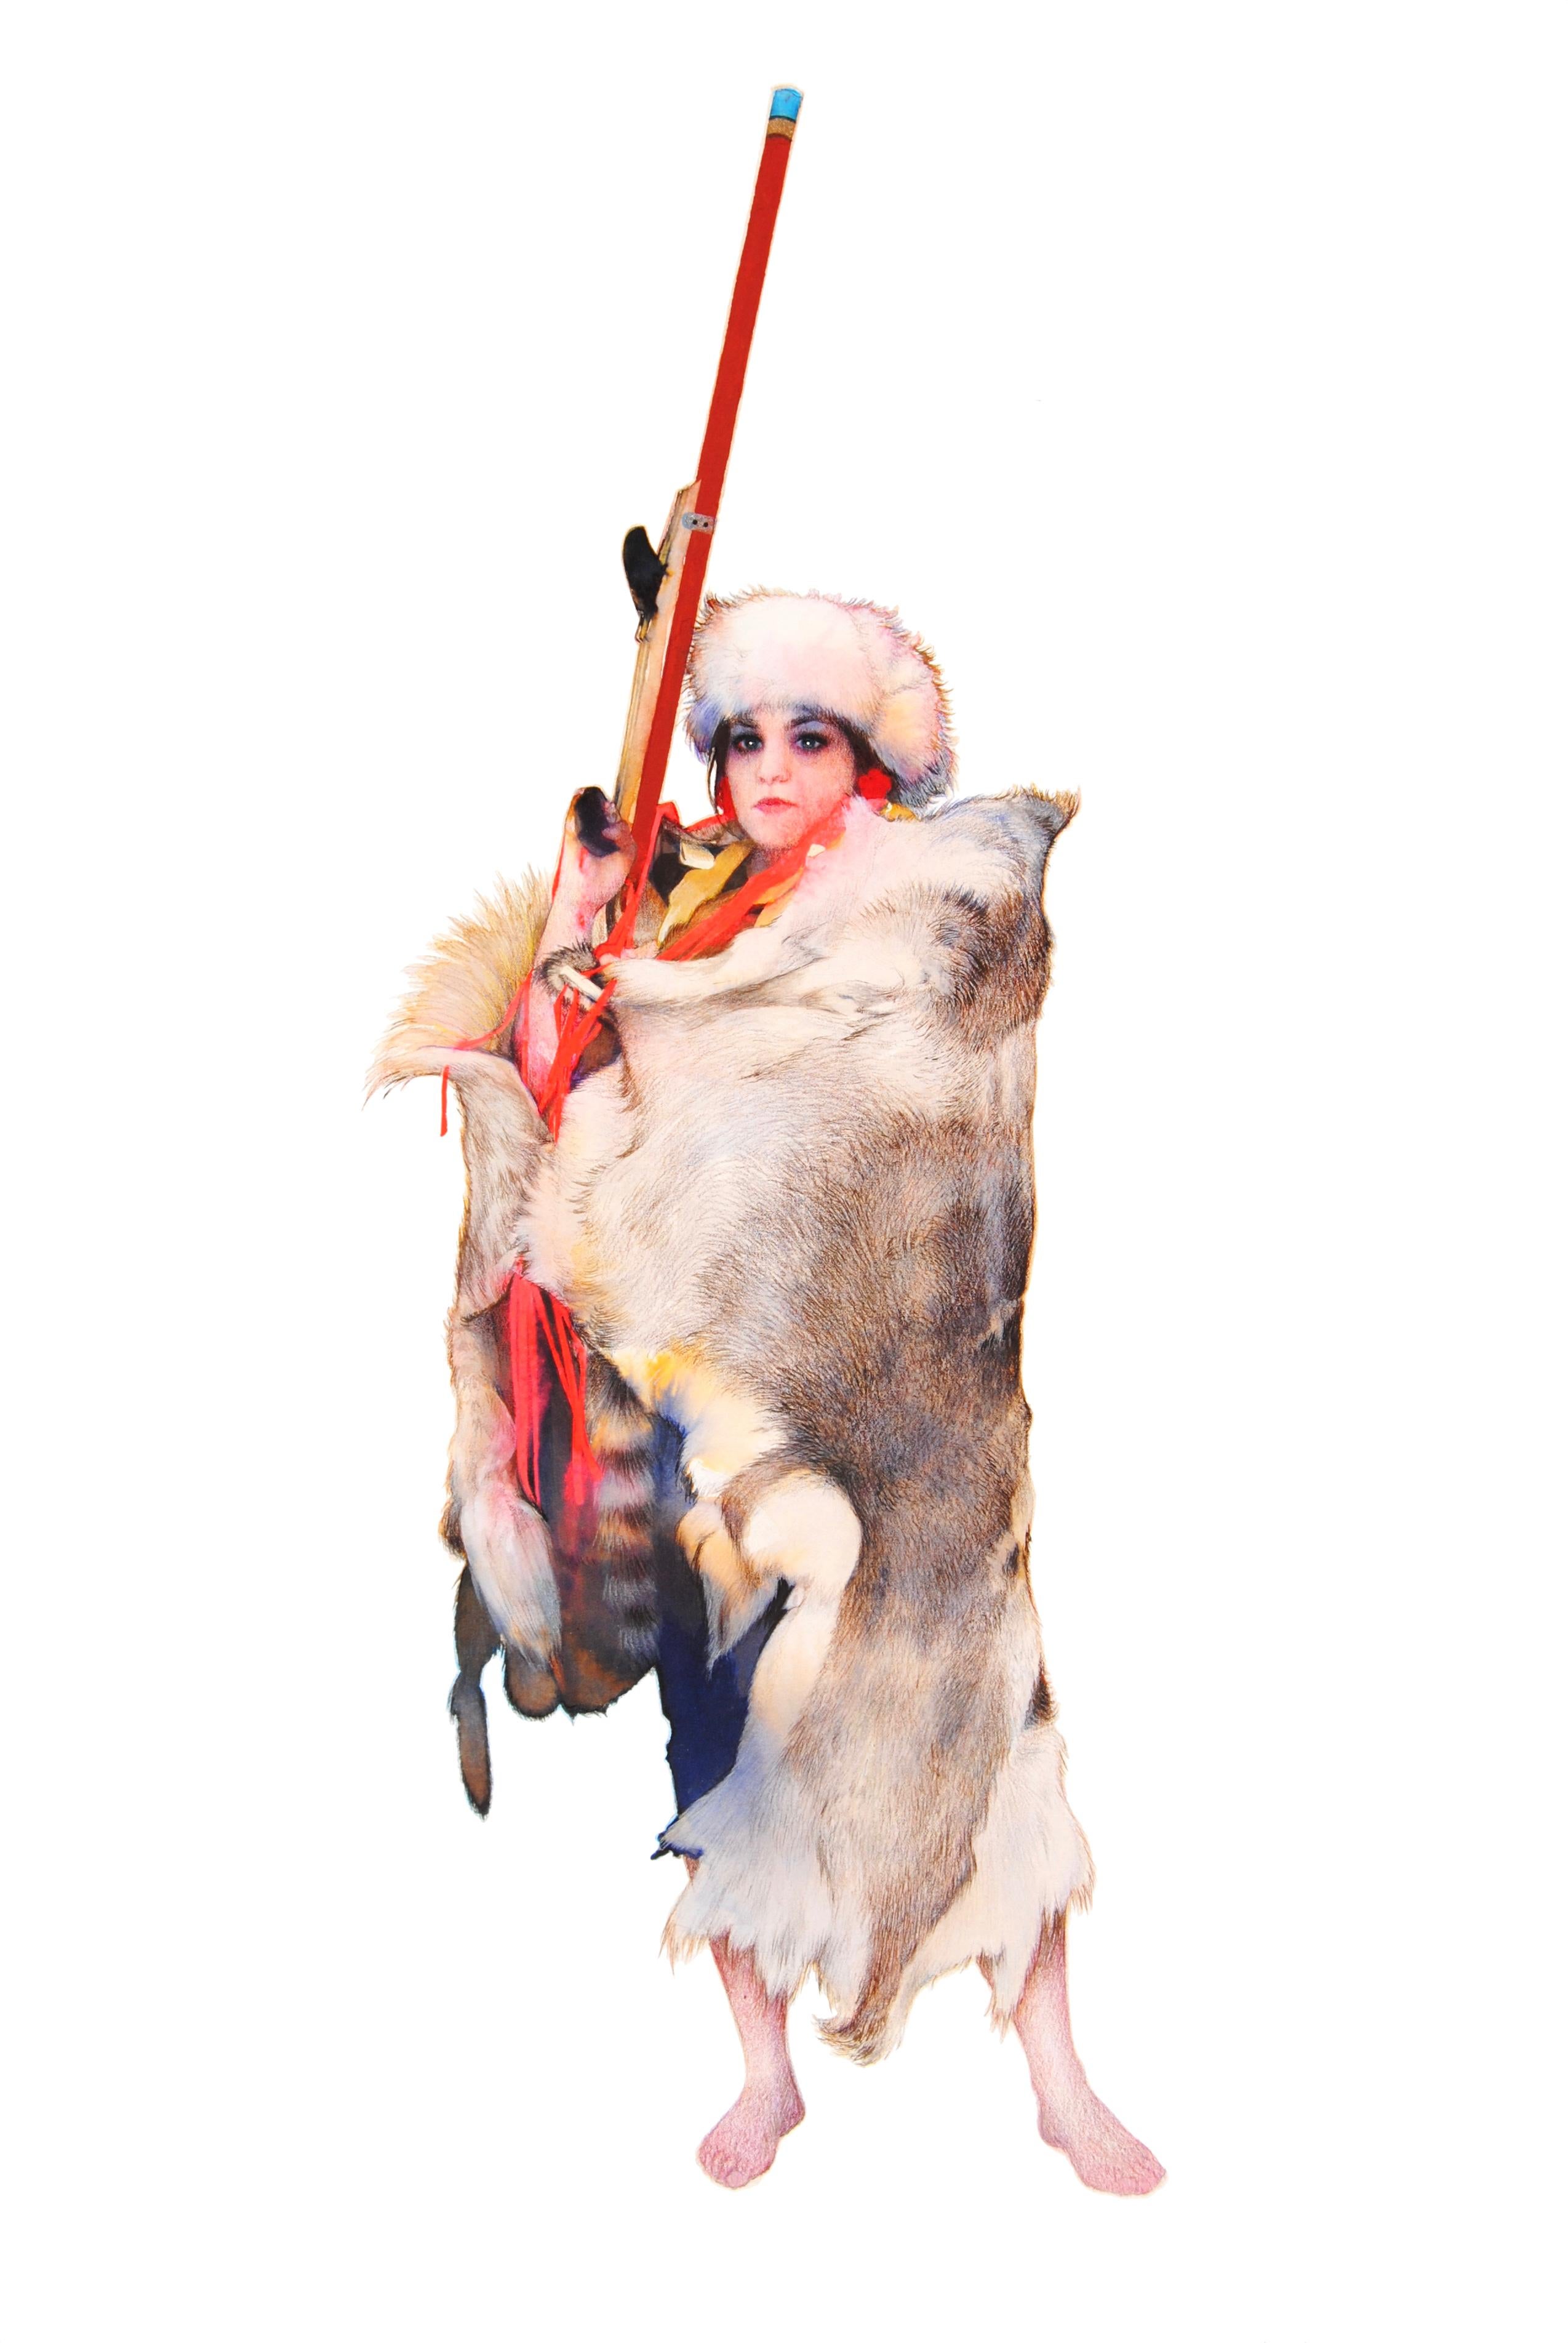 Naomi, figuratives Westernporträt einer starken weiblichen Figur, Neonrosa, Pelz mit rotem Rotguss